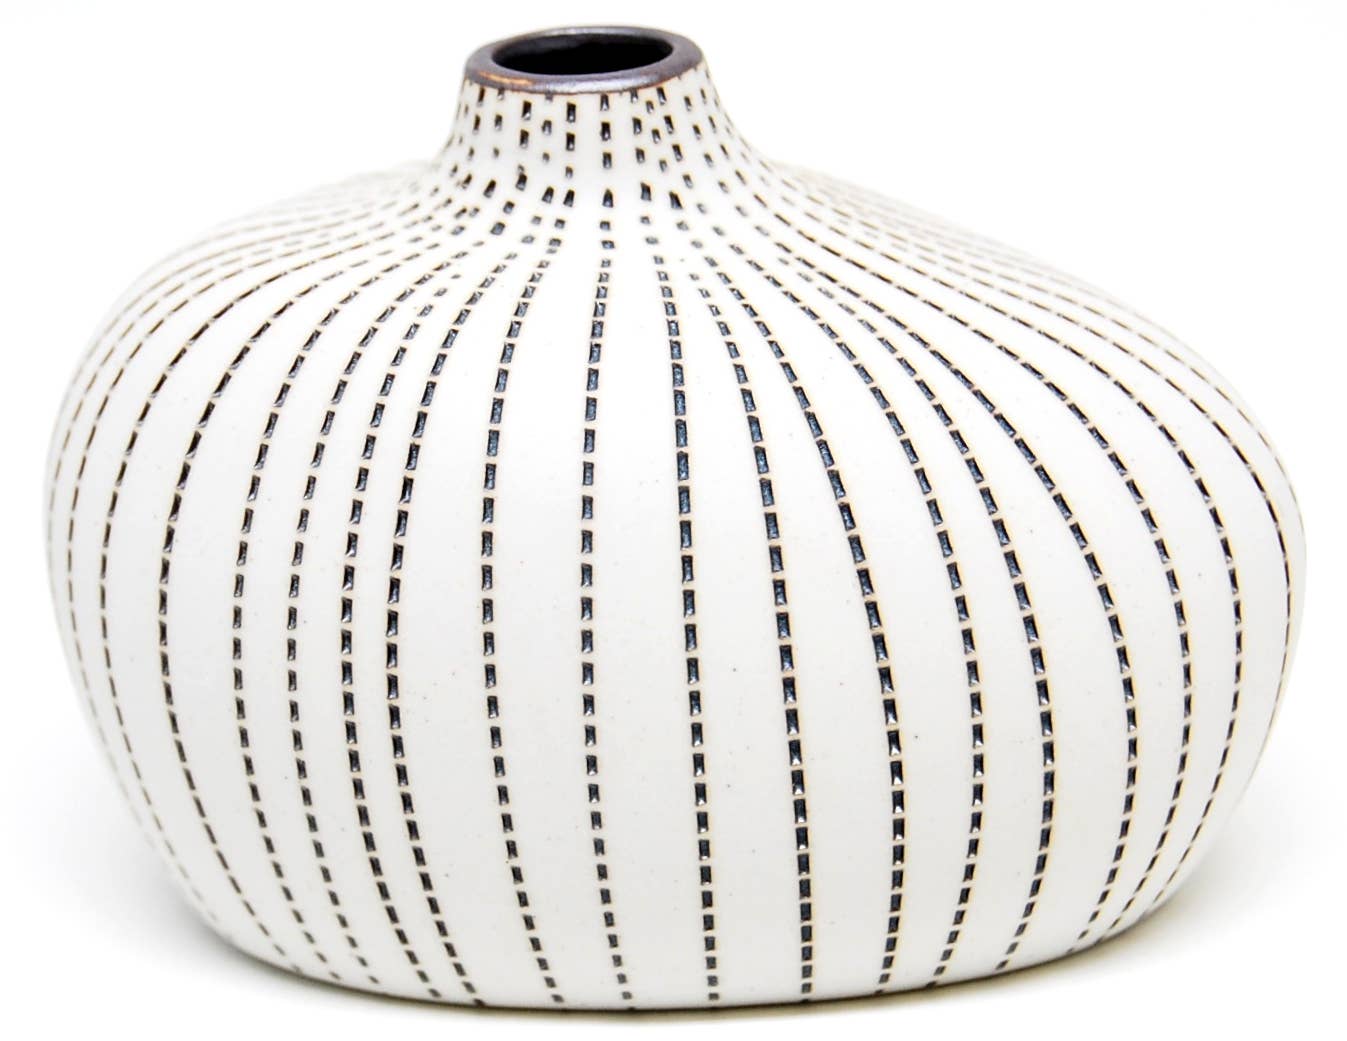 512W23 GUGU PIM L - WO 23 Porcelain bud vase